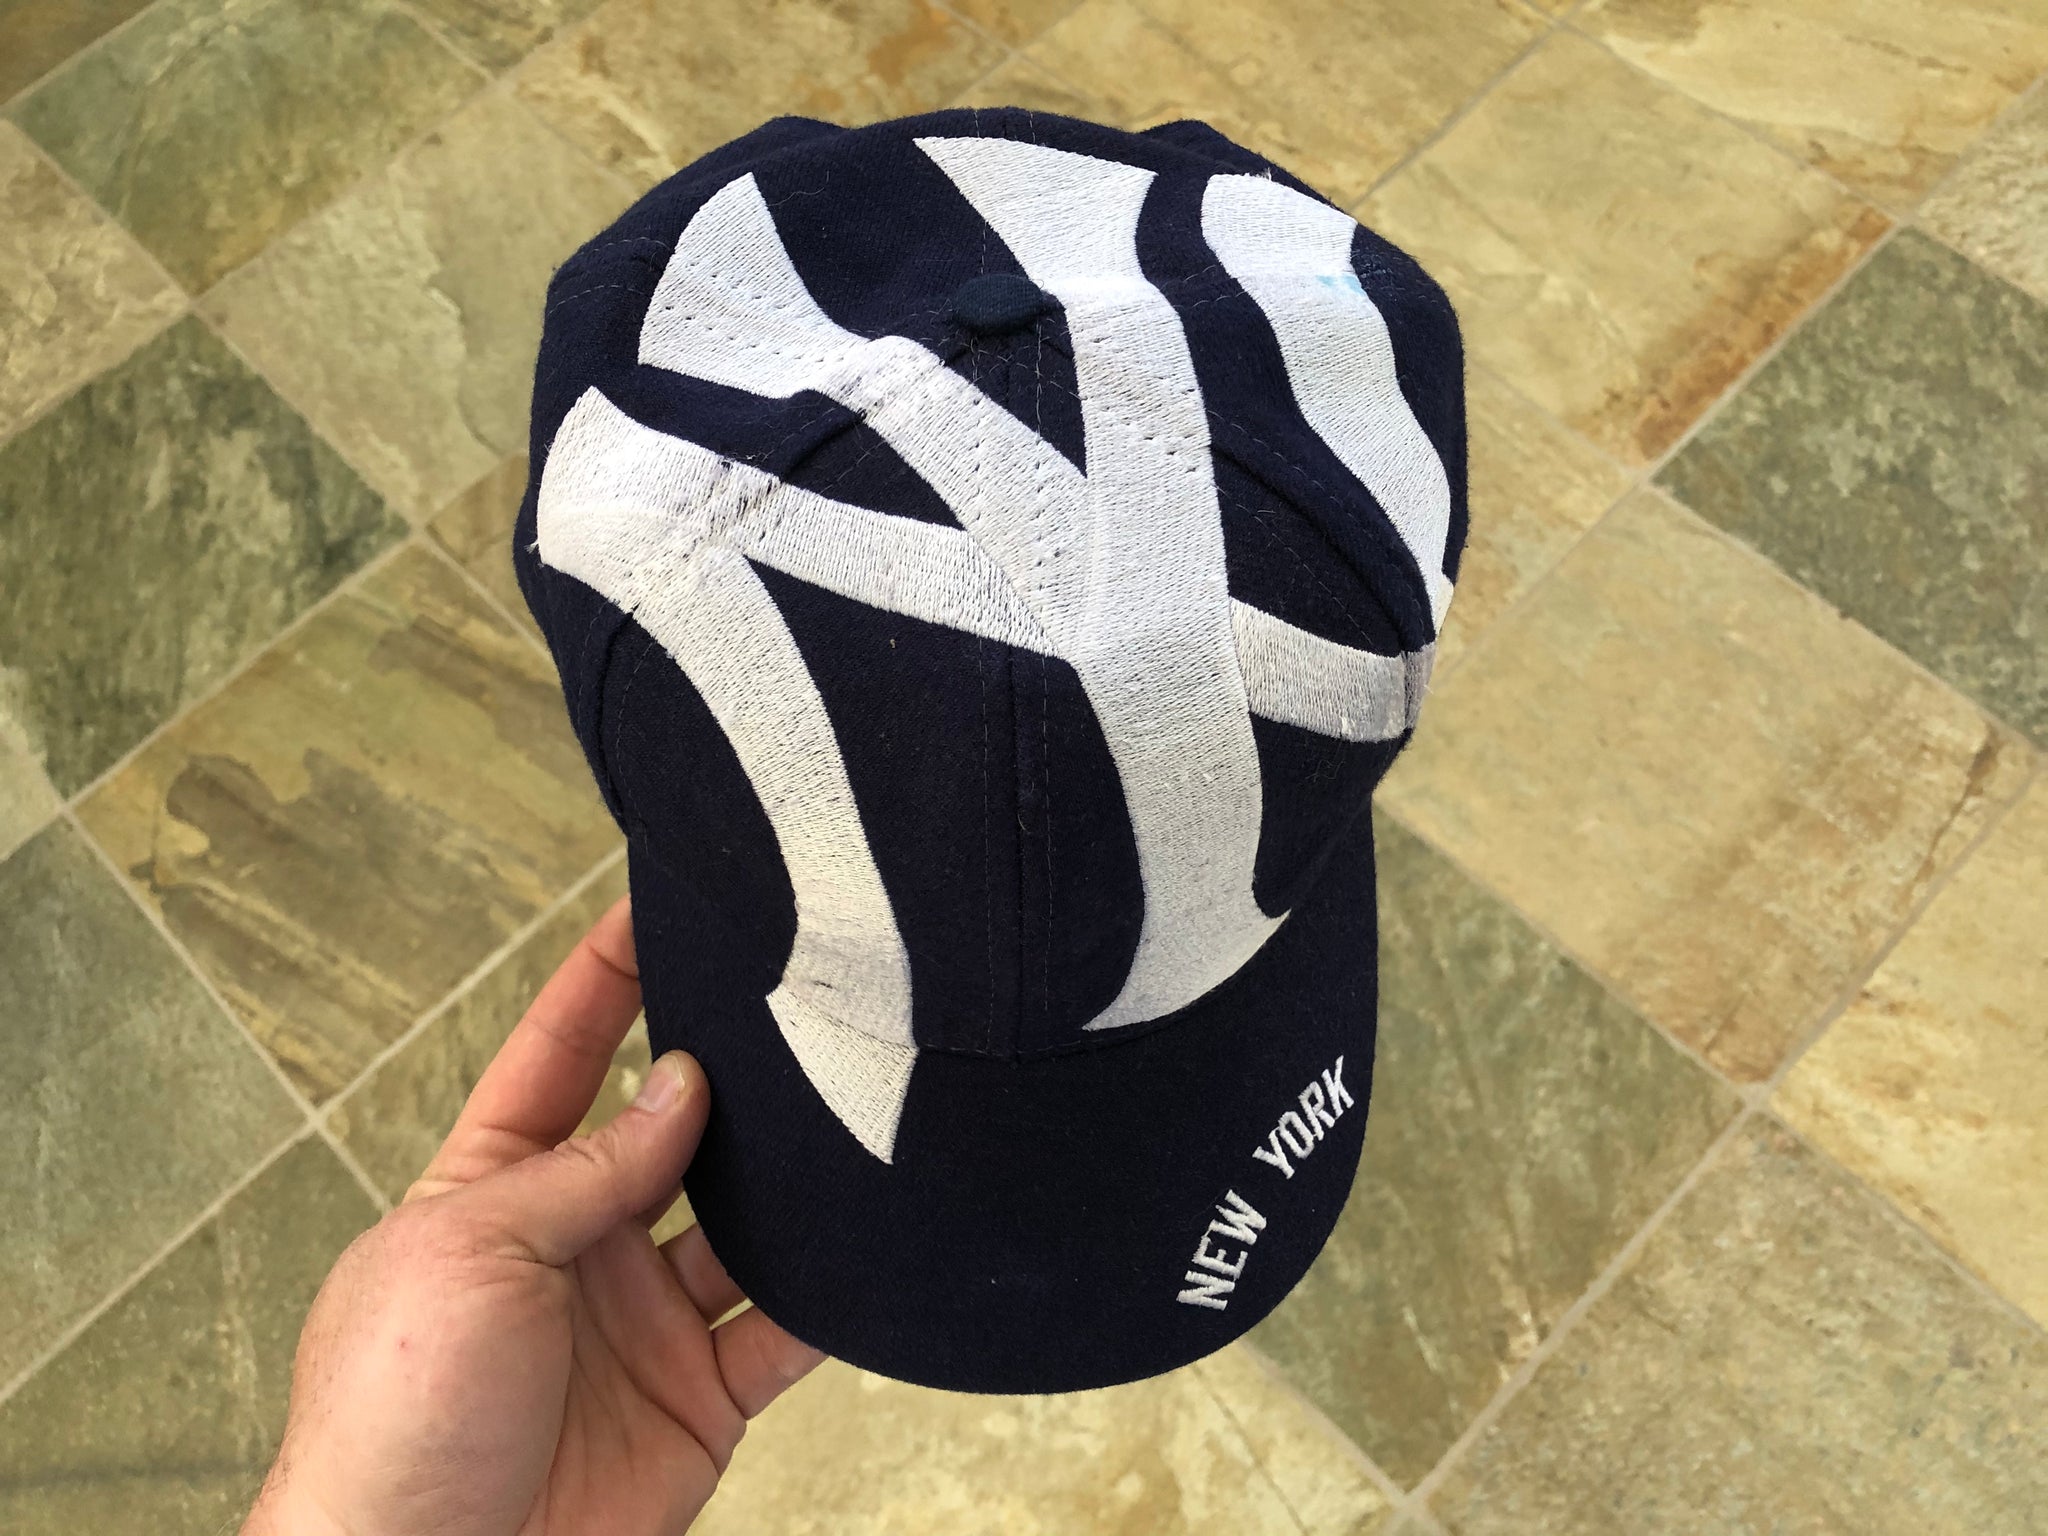 90s New York Yankees Logo Cap